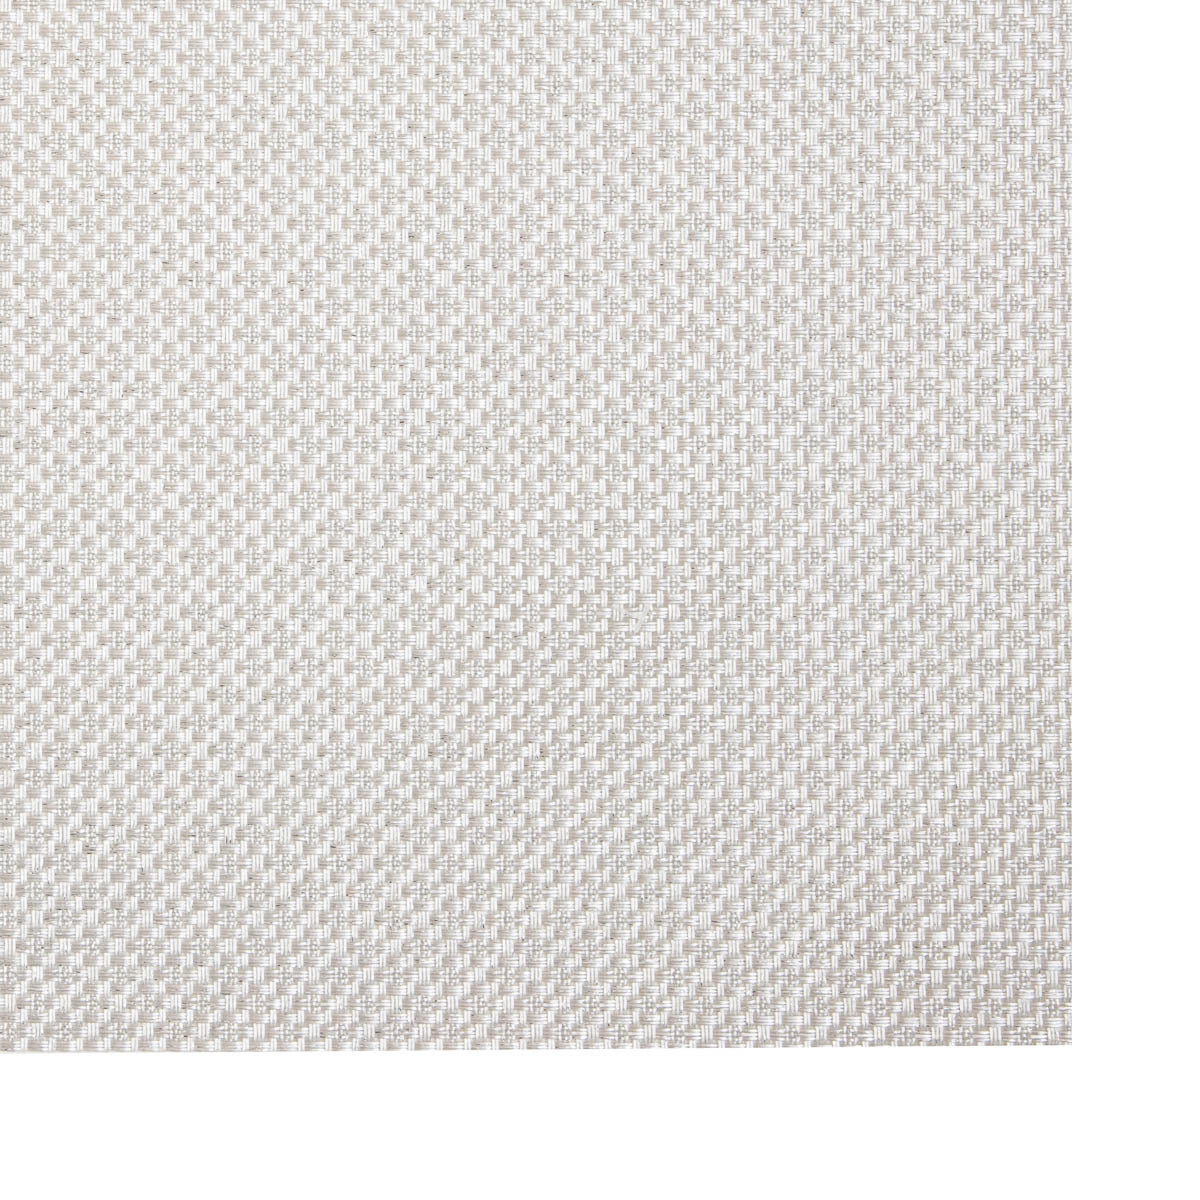 Suport de Farfurii pentru Masa Glamo Argintiu 30x45 cm